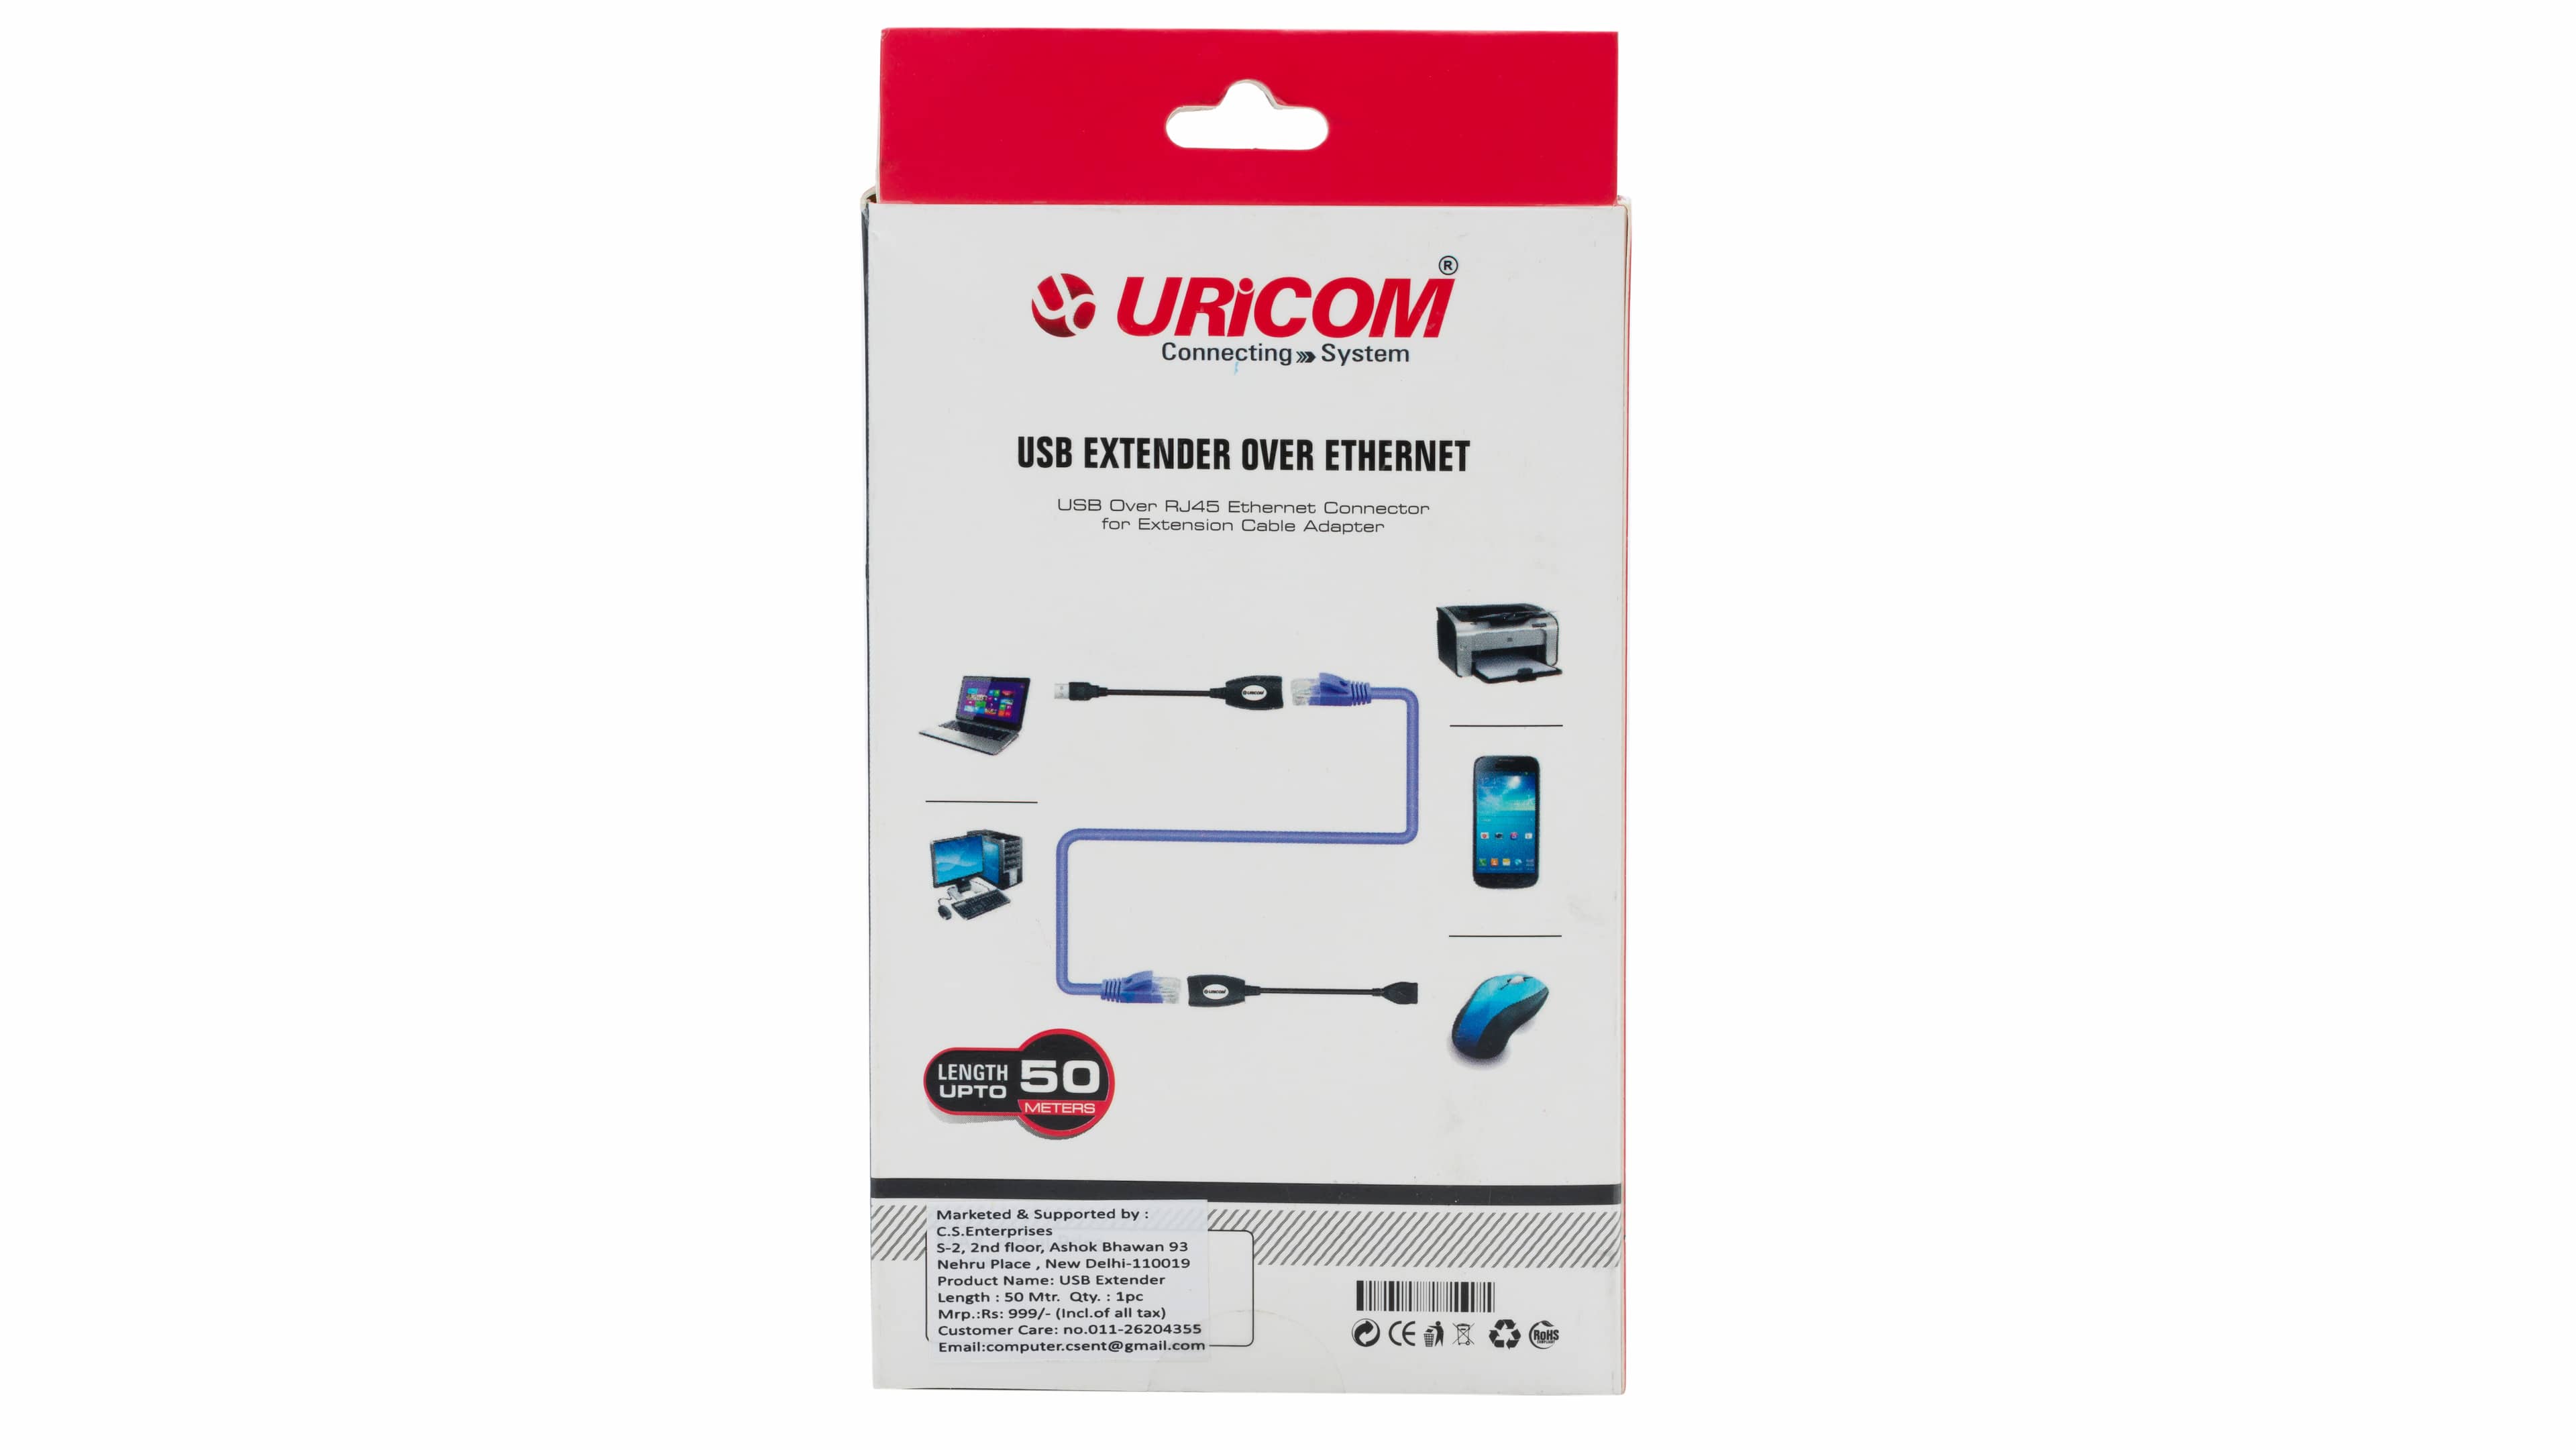 Uricom-USB-Extender-Over-Ethernet-image_3